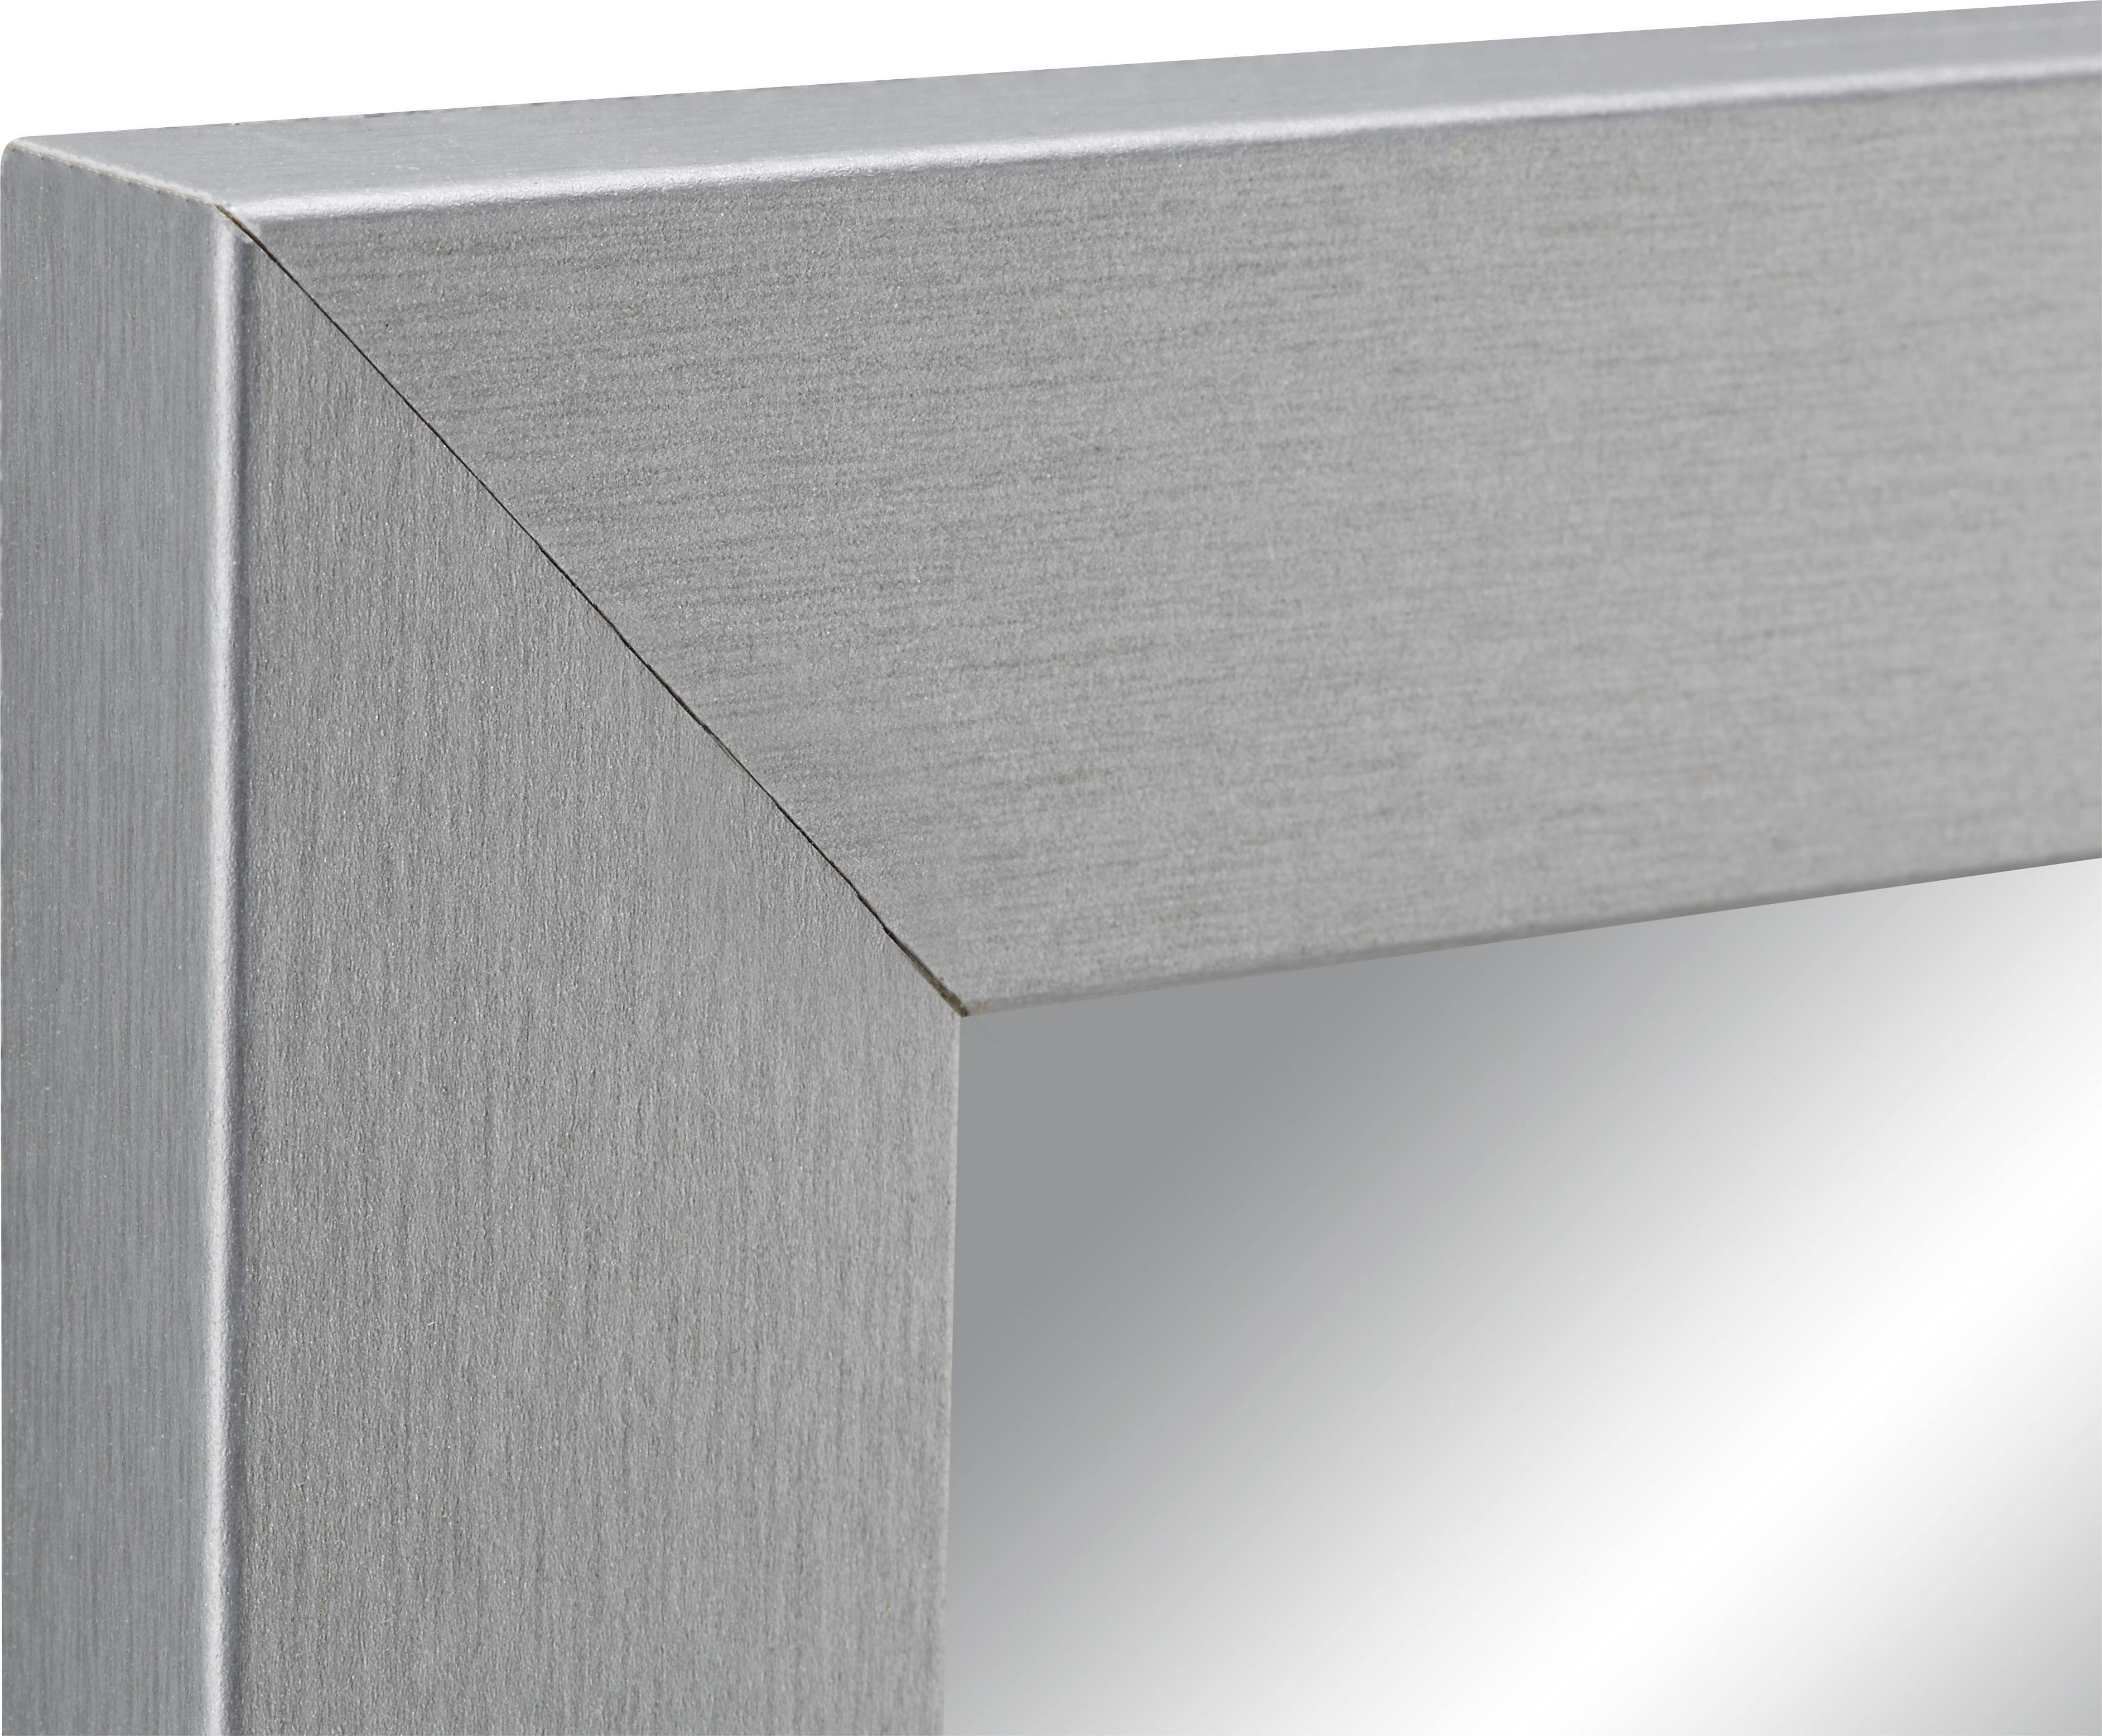 Ogledalo Zidno Silver - srebrne boje, staklo/drvni materijal (50/150/2cm) - Modern Living